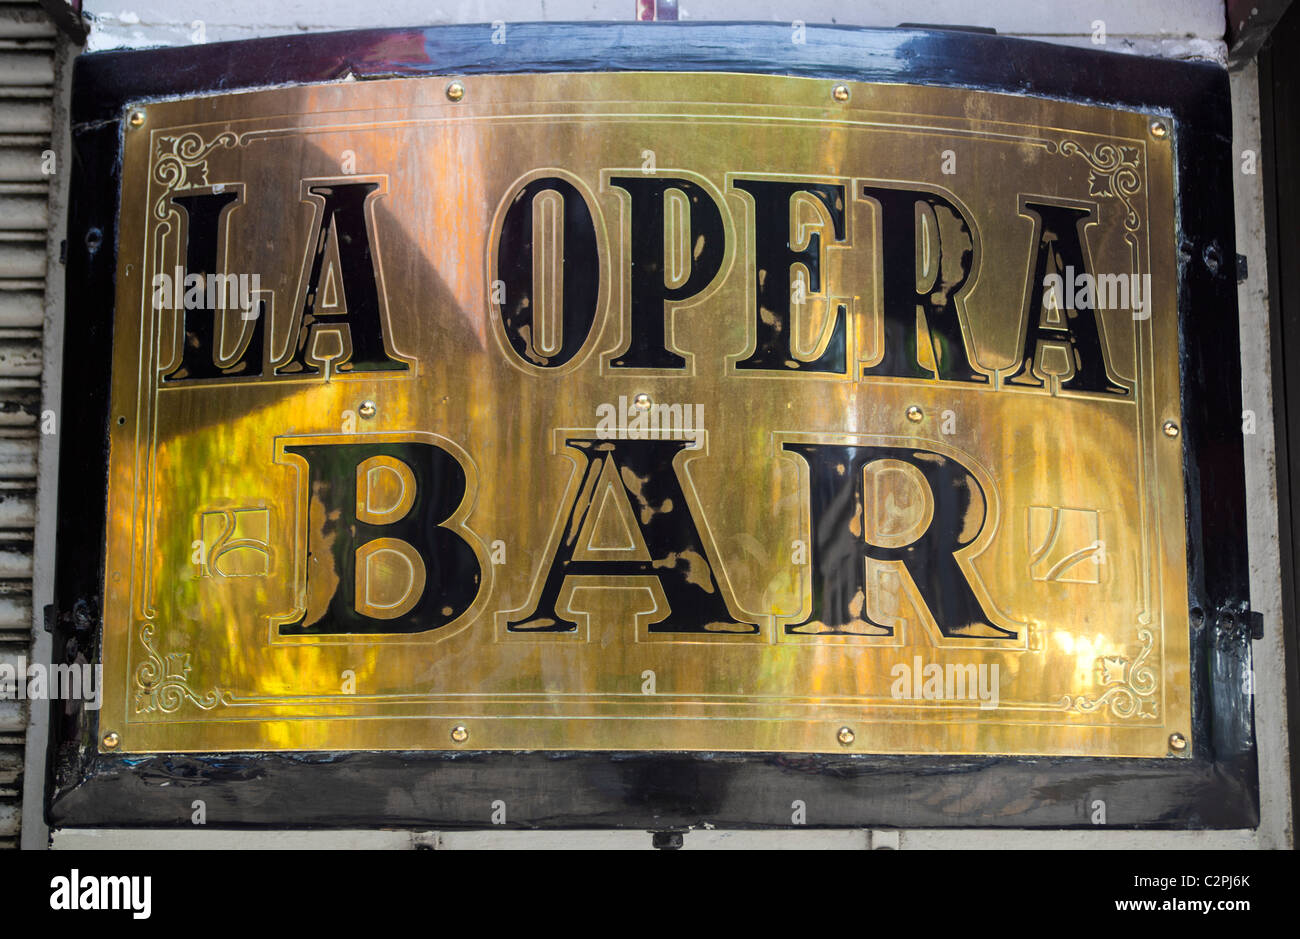 La Opera Bar and Restaurant Mexico City Stock Photo